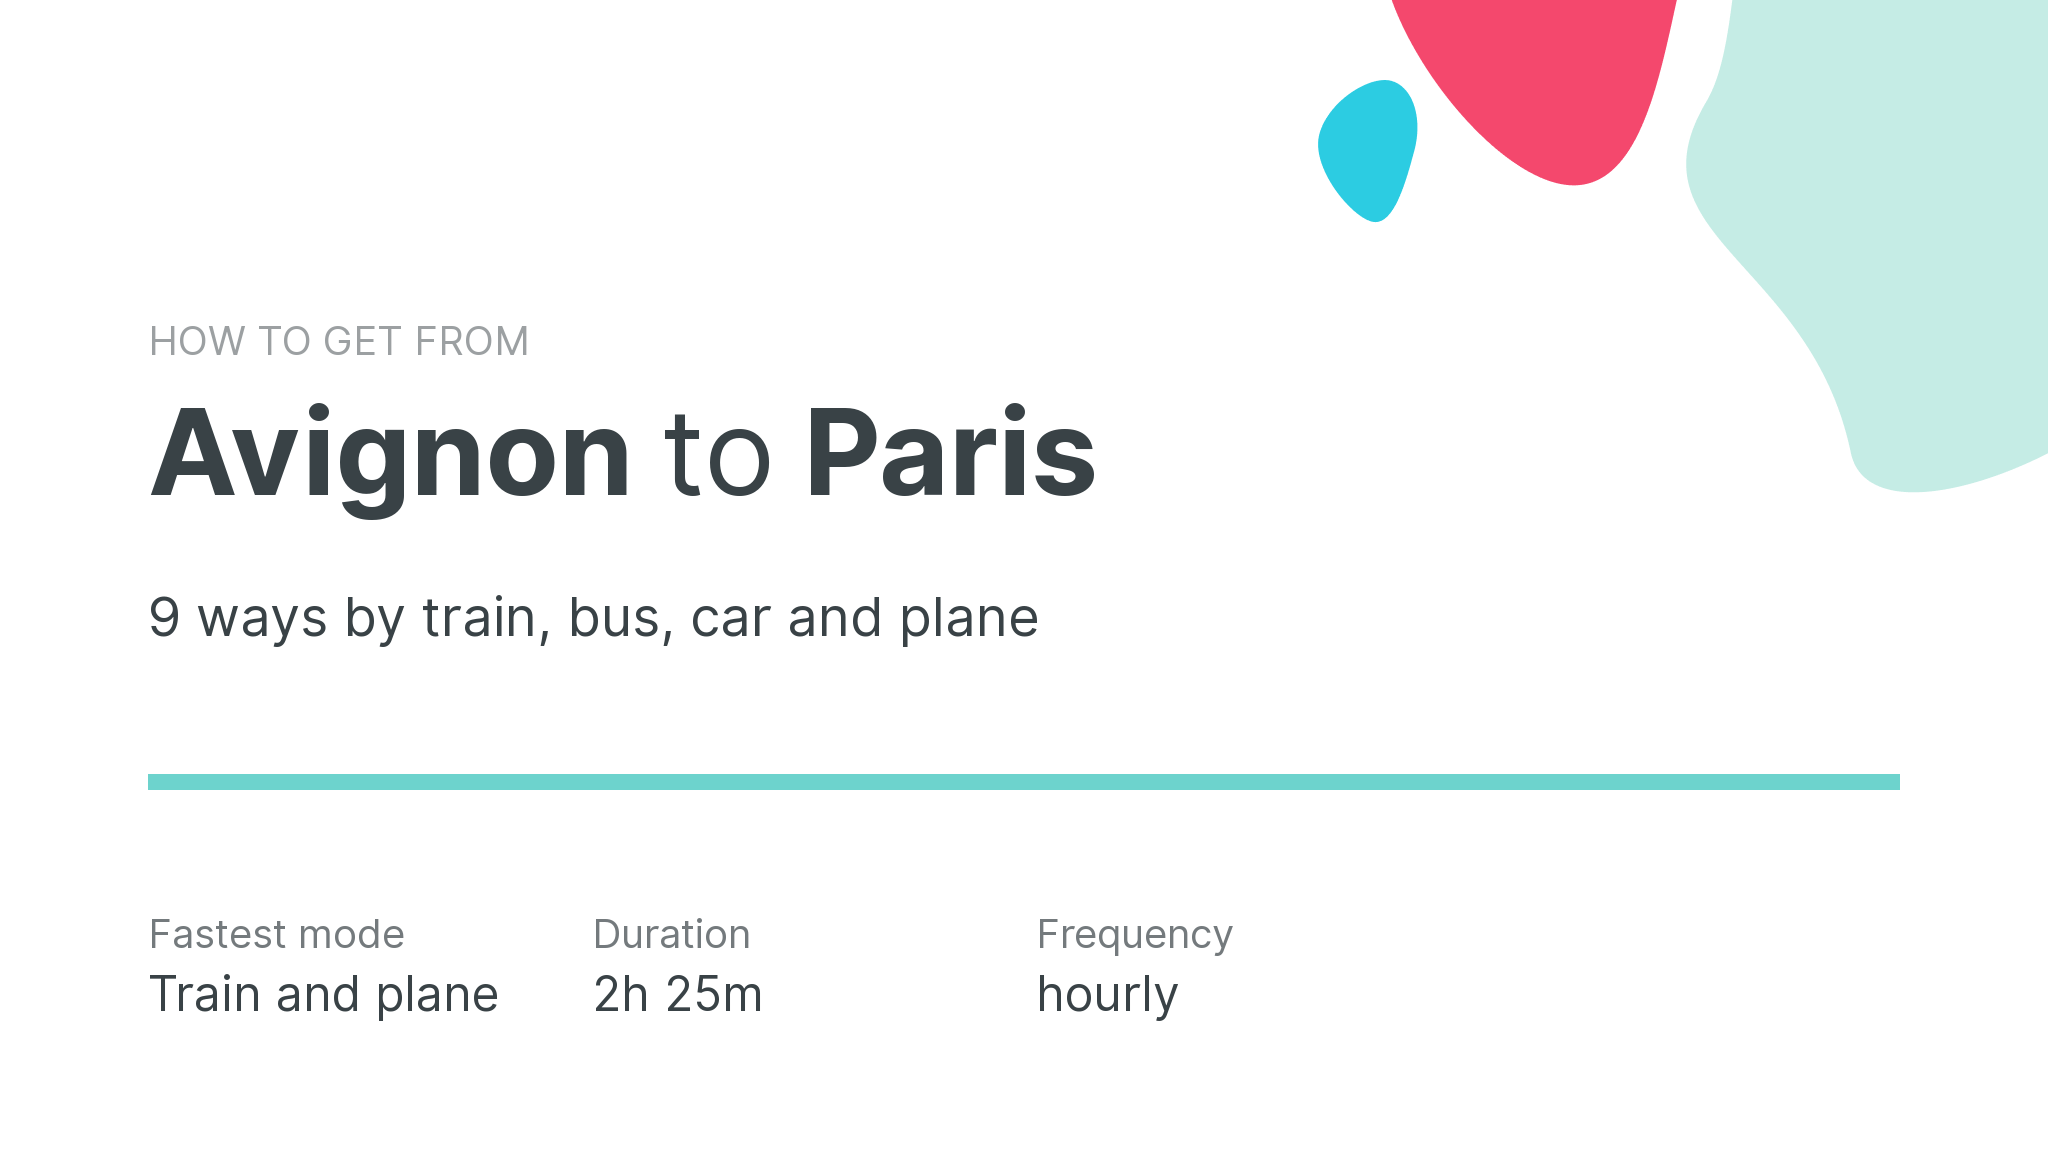 How do I get from Avignon to Paris